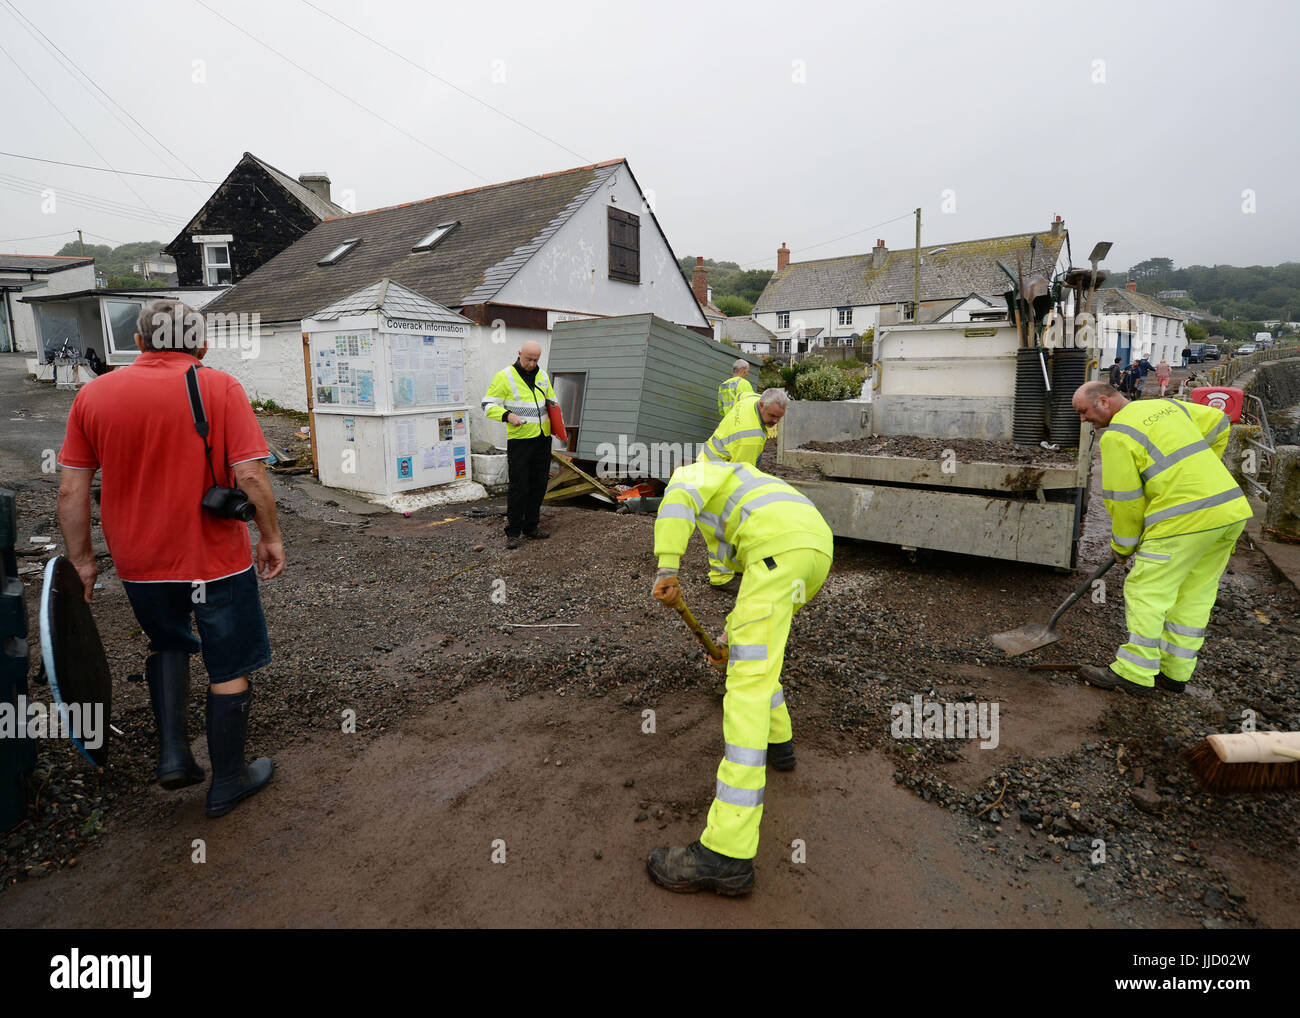 La claire commence à Coverack, Cornwall, après d'intenses pluies provoquant inondations dans le village côtier. Banque D'Images